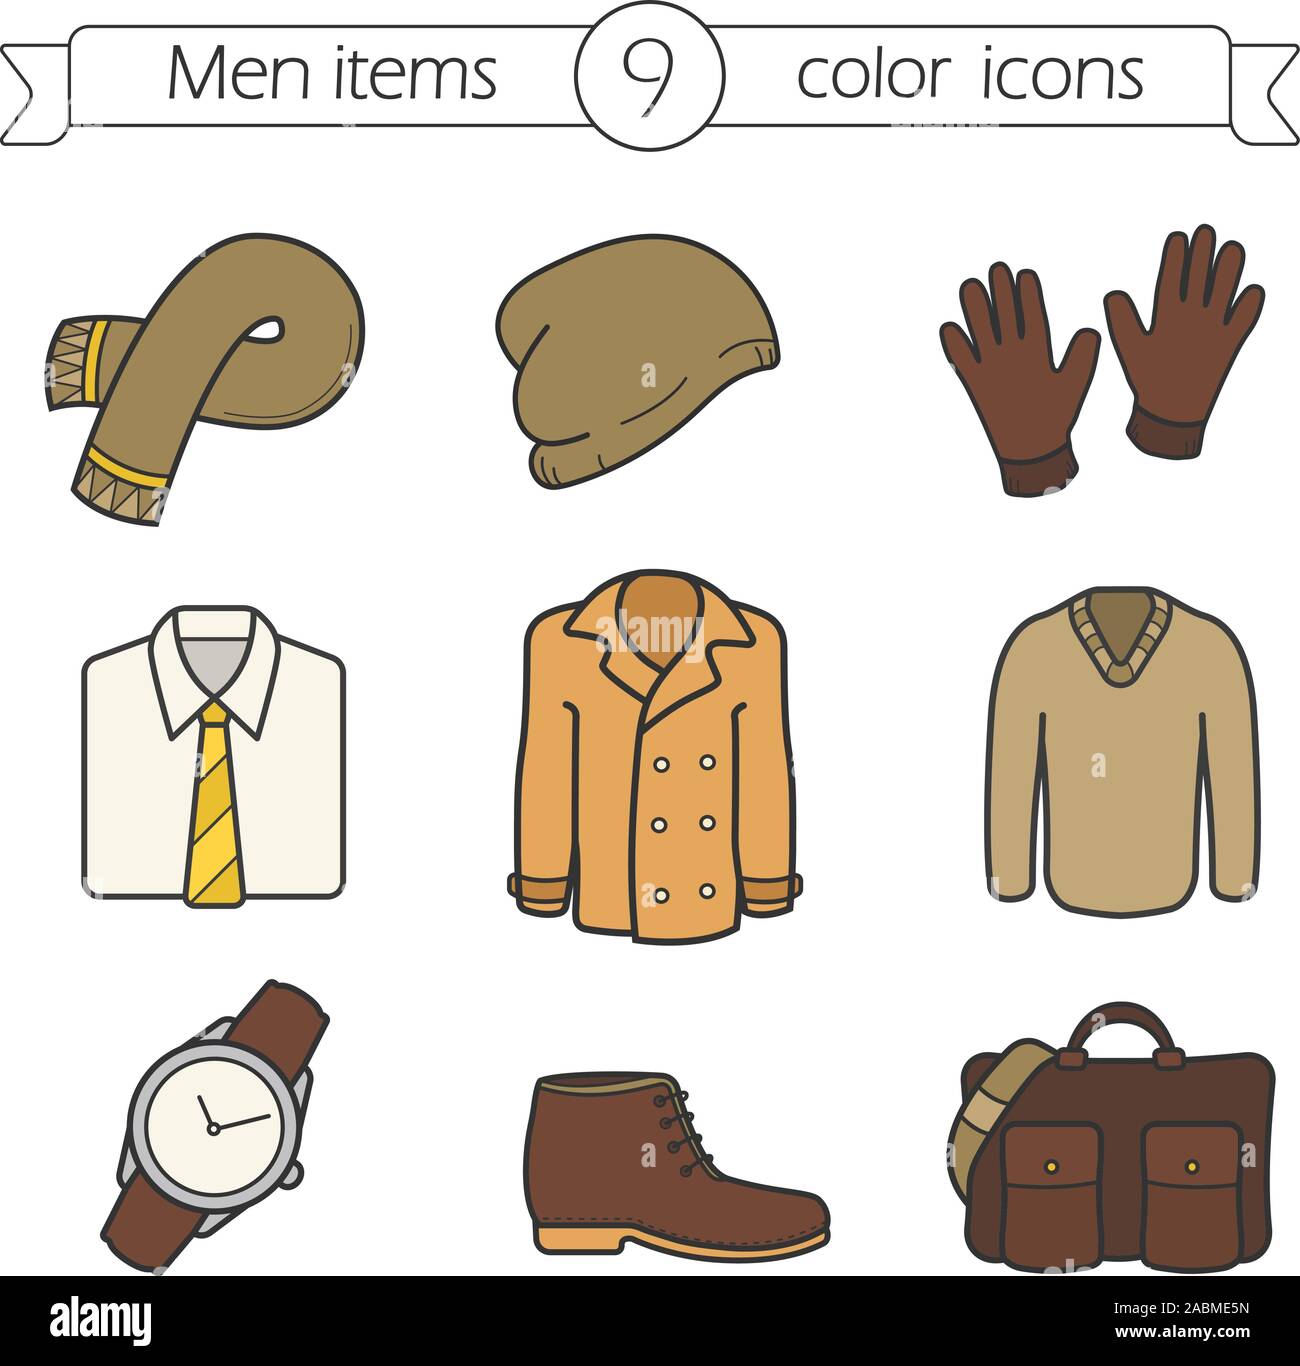 Vêtements et accessoires pour hommes color icons set. Écharpe, bonnet, gants,  chemise et cravate, veste, gilet, montre-bracelet, boot, sac. La mode  d'automne. Ve isolés Image Vectorielle Stock - Alamy